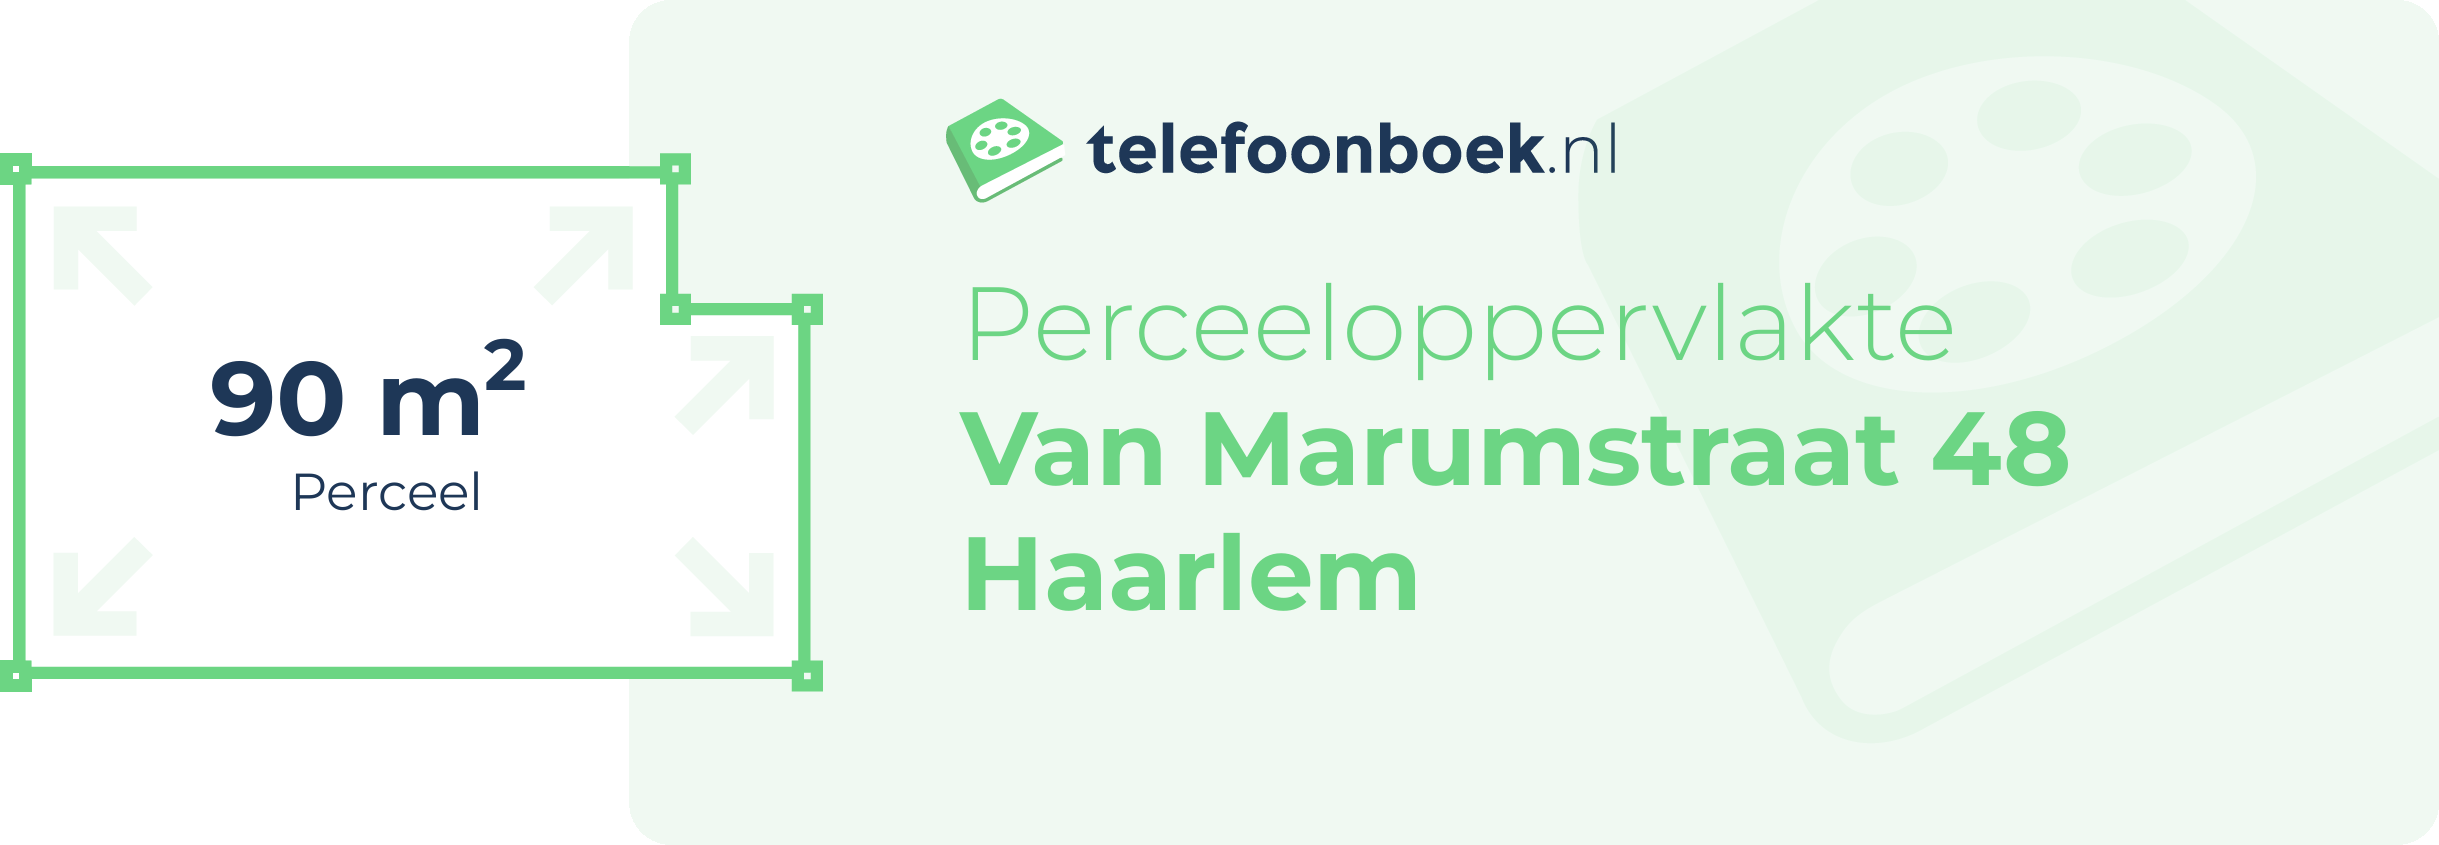 Perceeloppervlakte Van Marumstraat 48 Haarlem